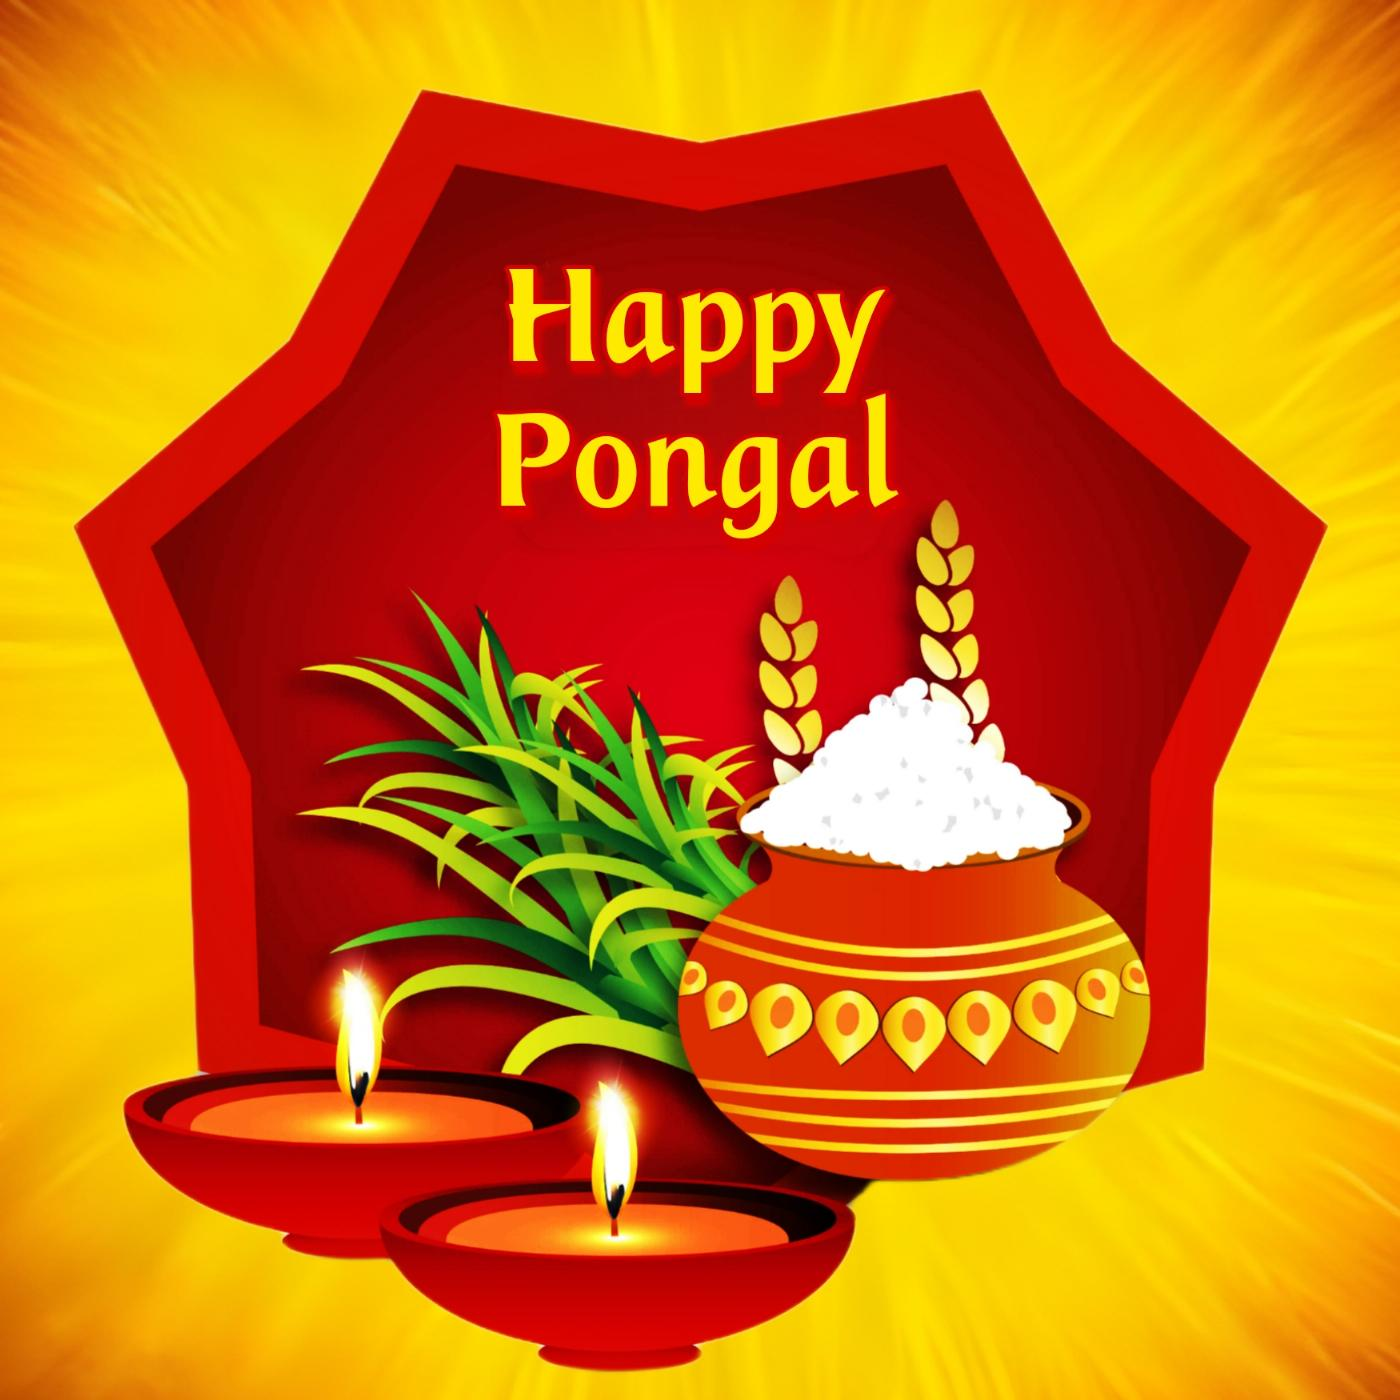 Celebraçãodo Pongal.